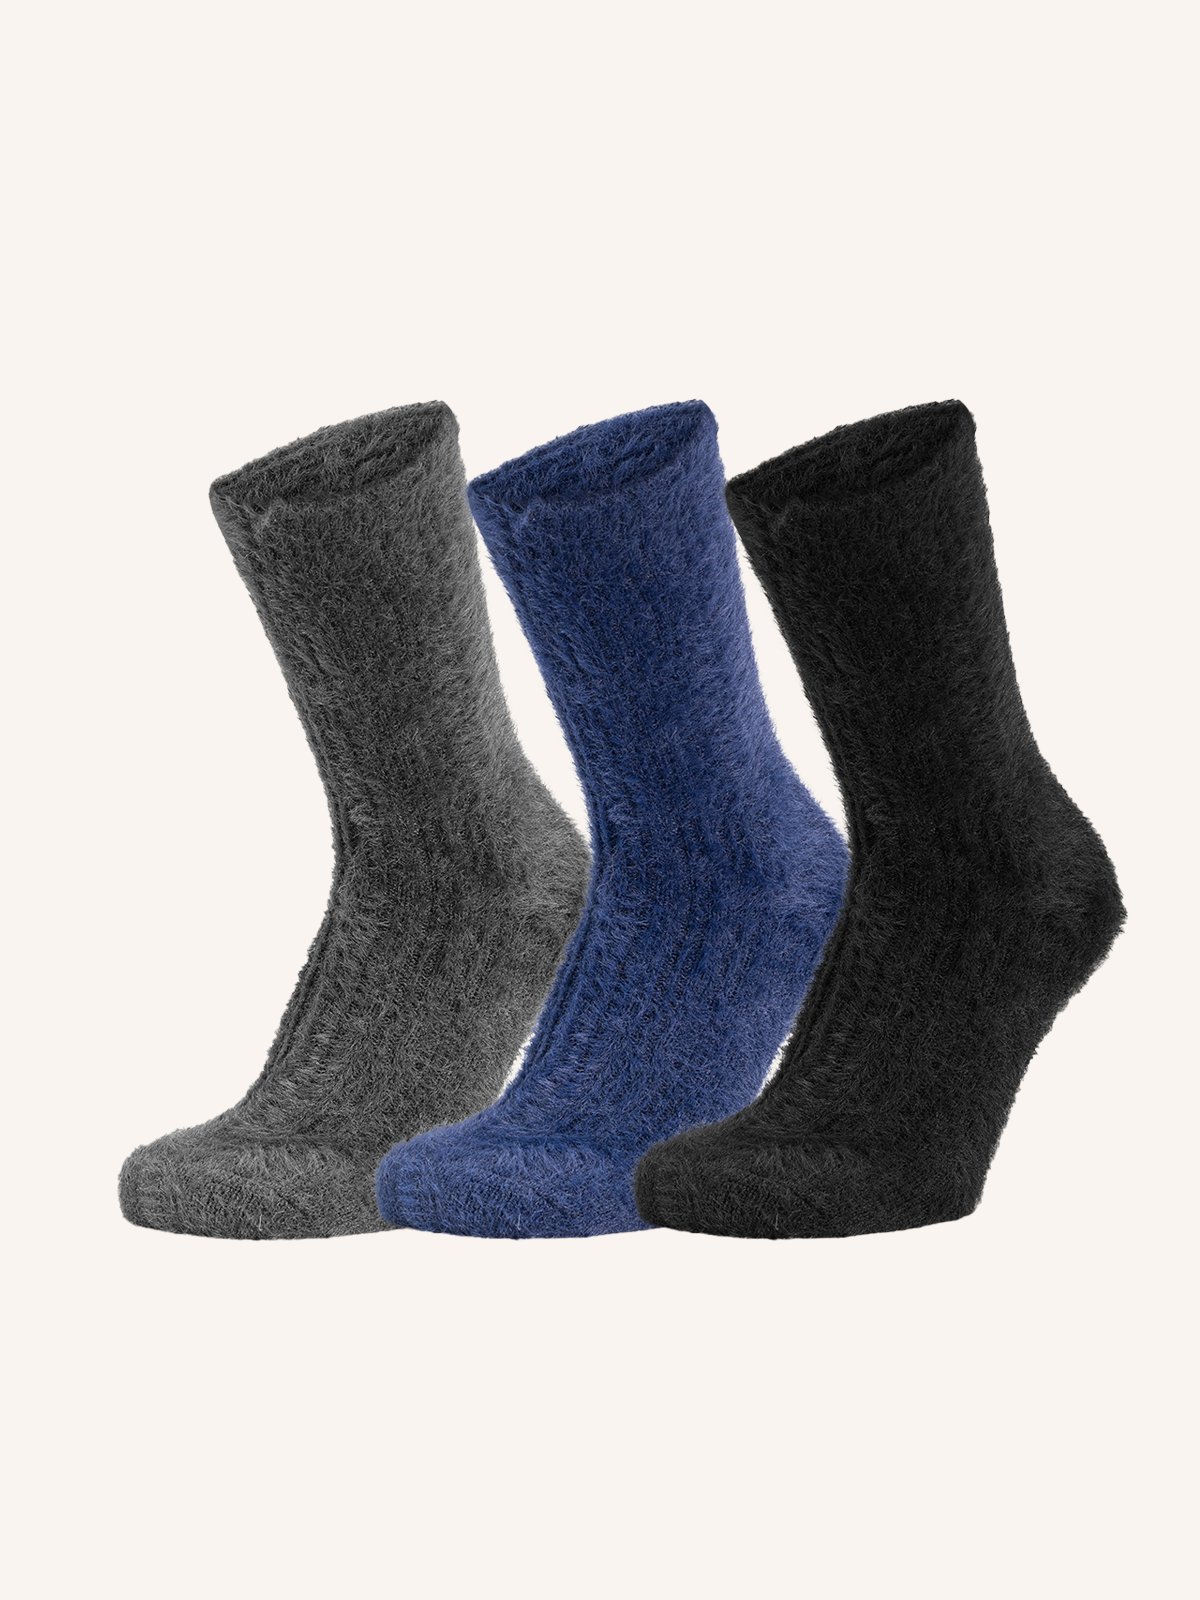 Soft Short Socks for Women | Plain Color | Pack of 3 pairs | Dudu